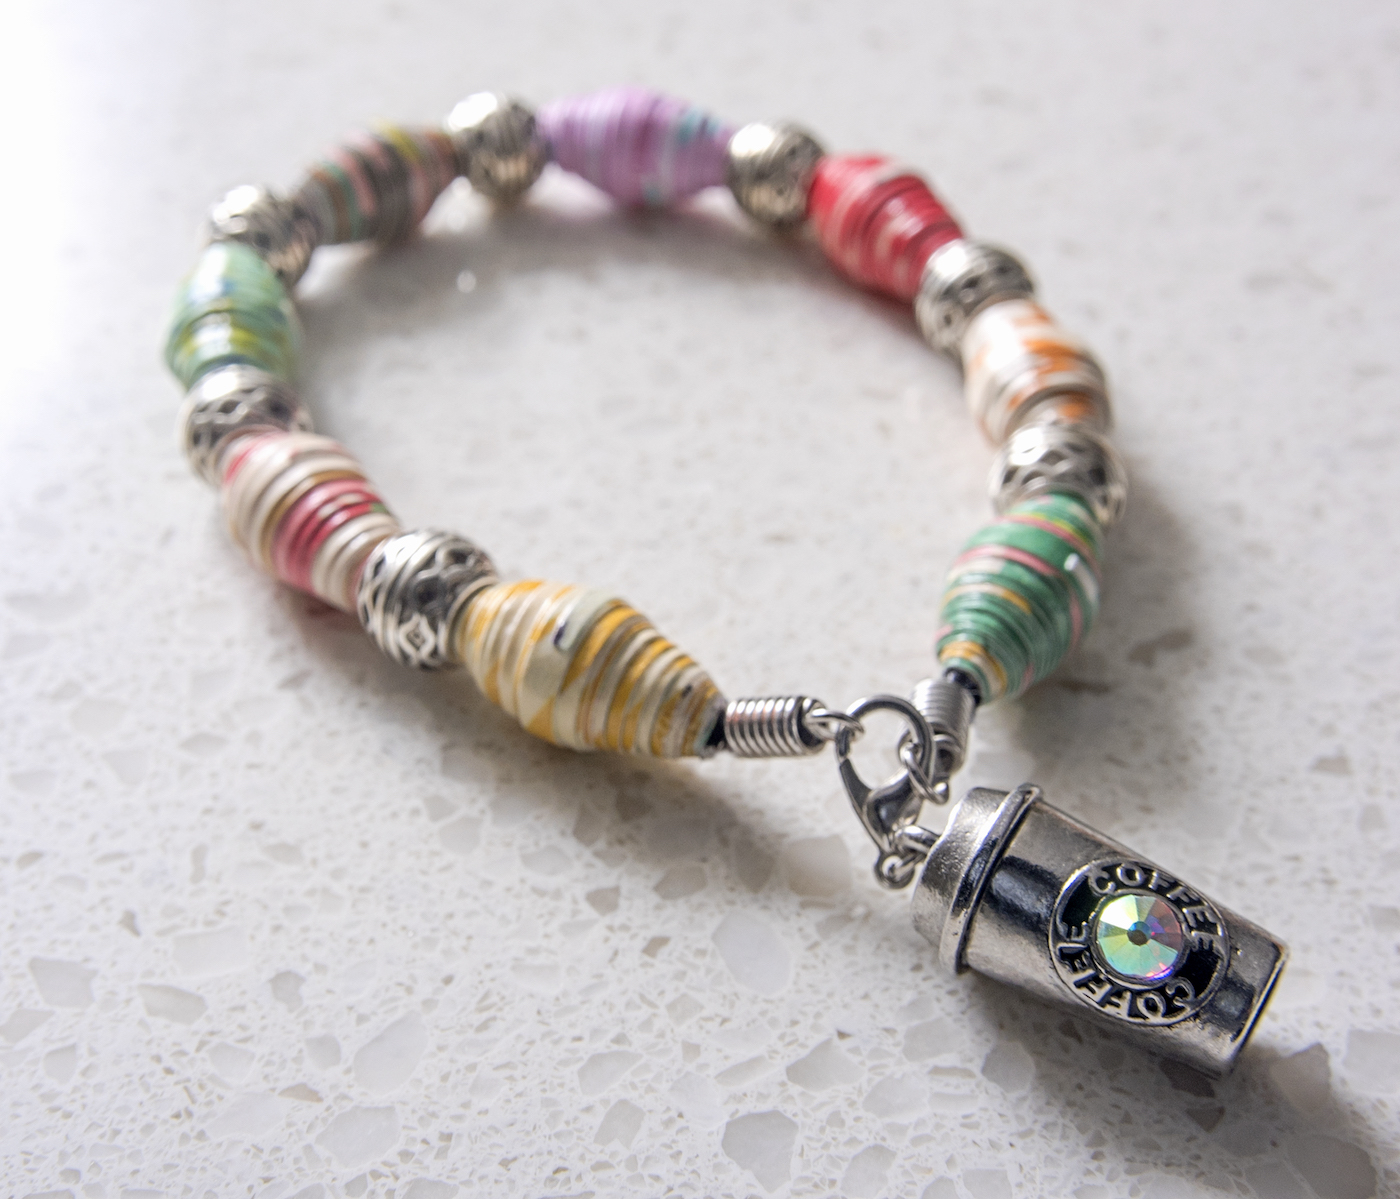 DIY paper beads on a bracelet